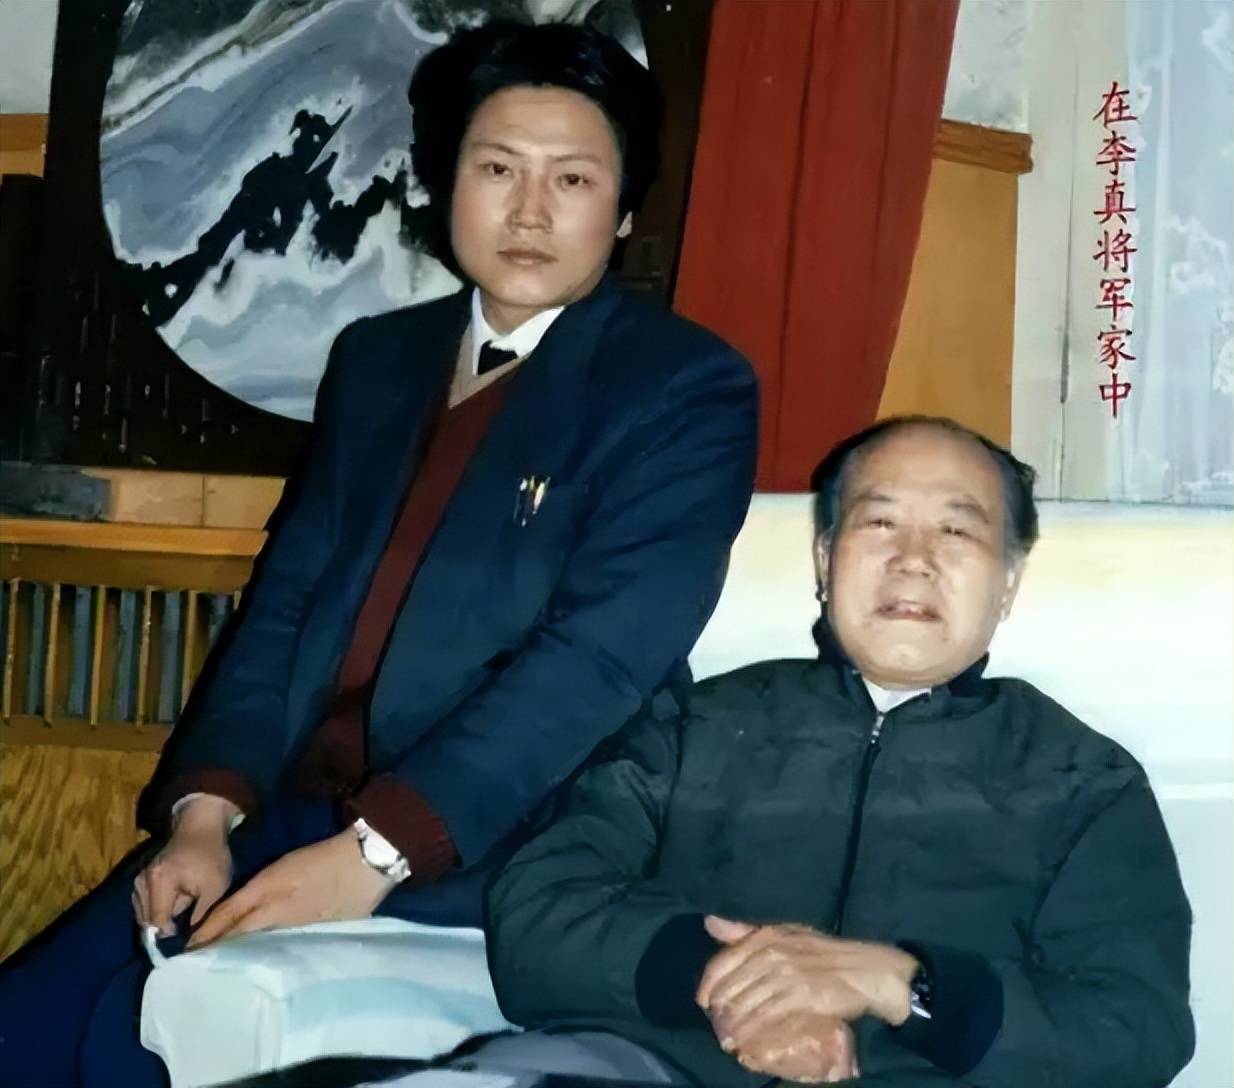 1985年,李真将军以大军区正职离休,当时已经67岁了,该安享晚年了,但是